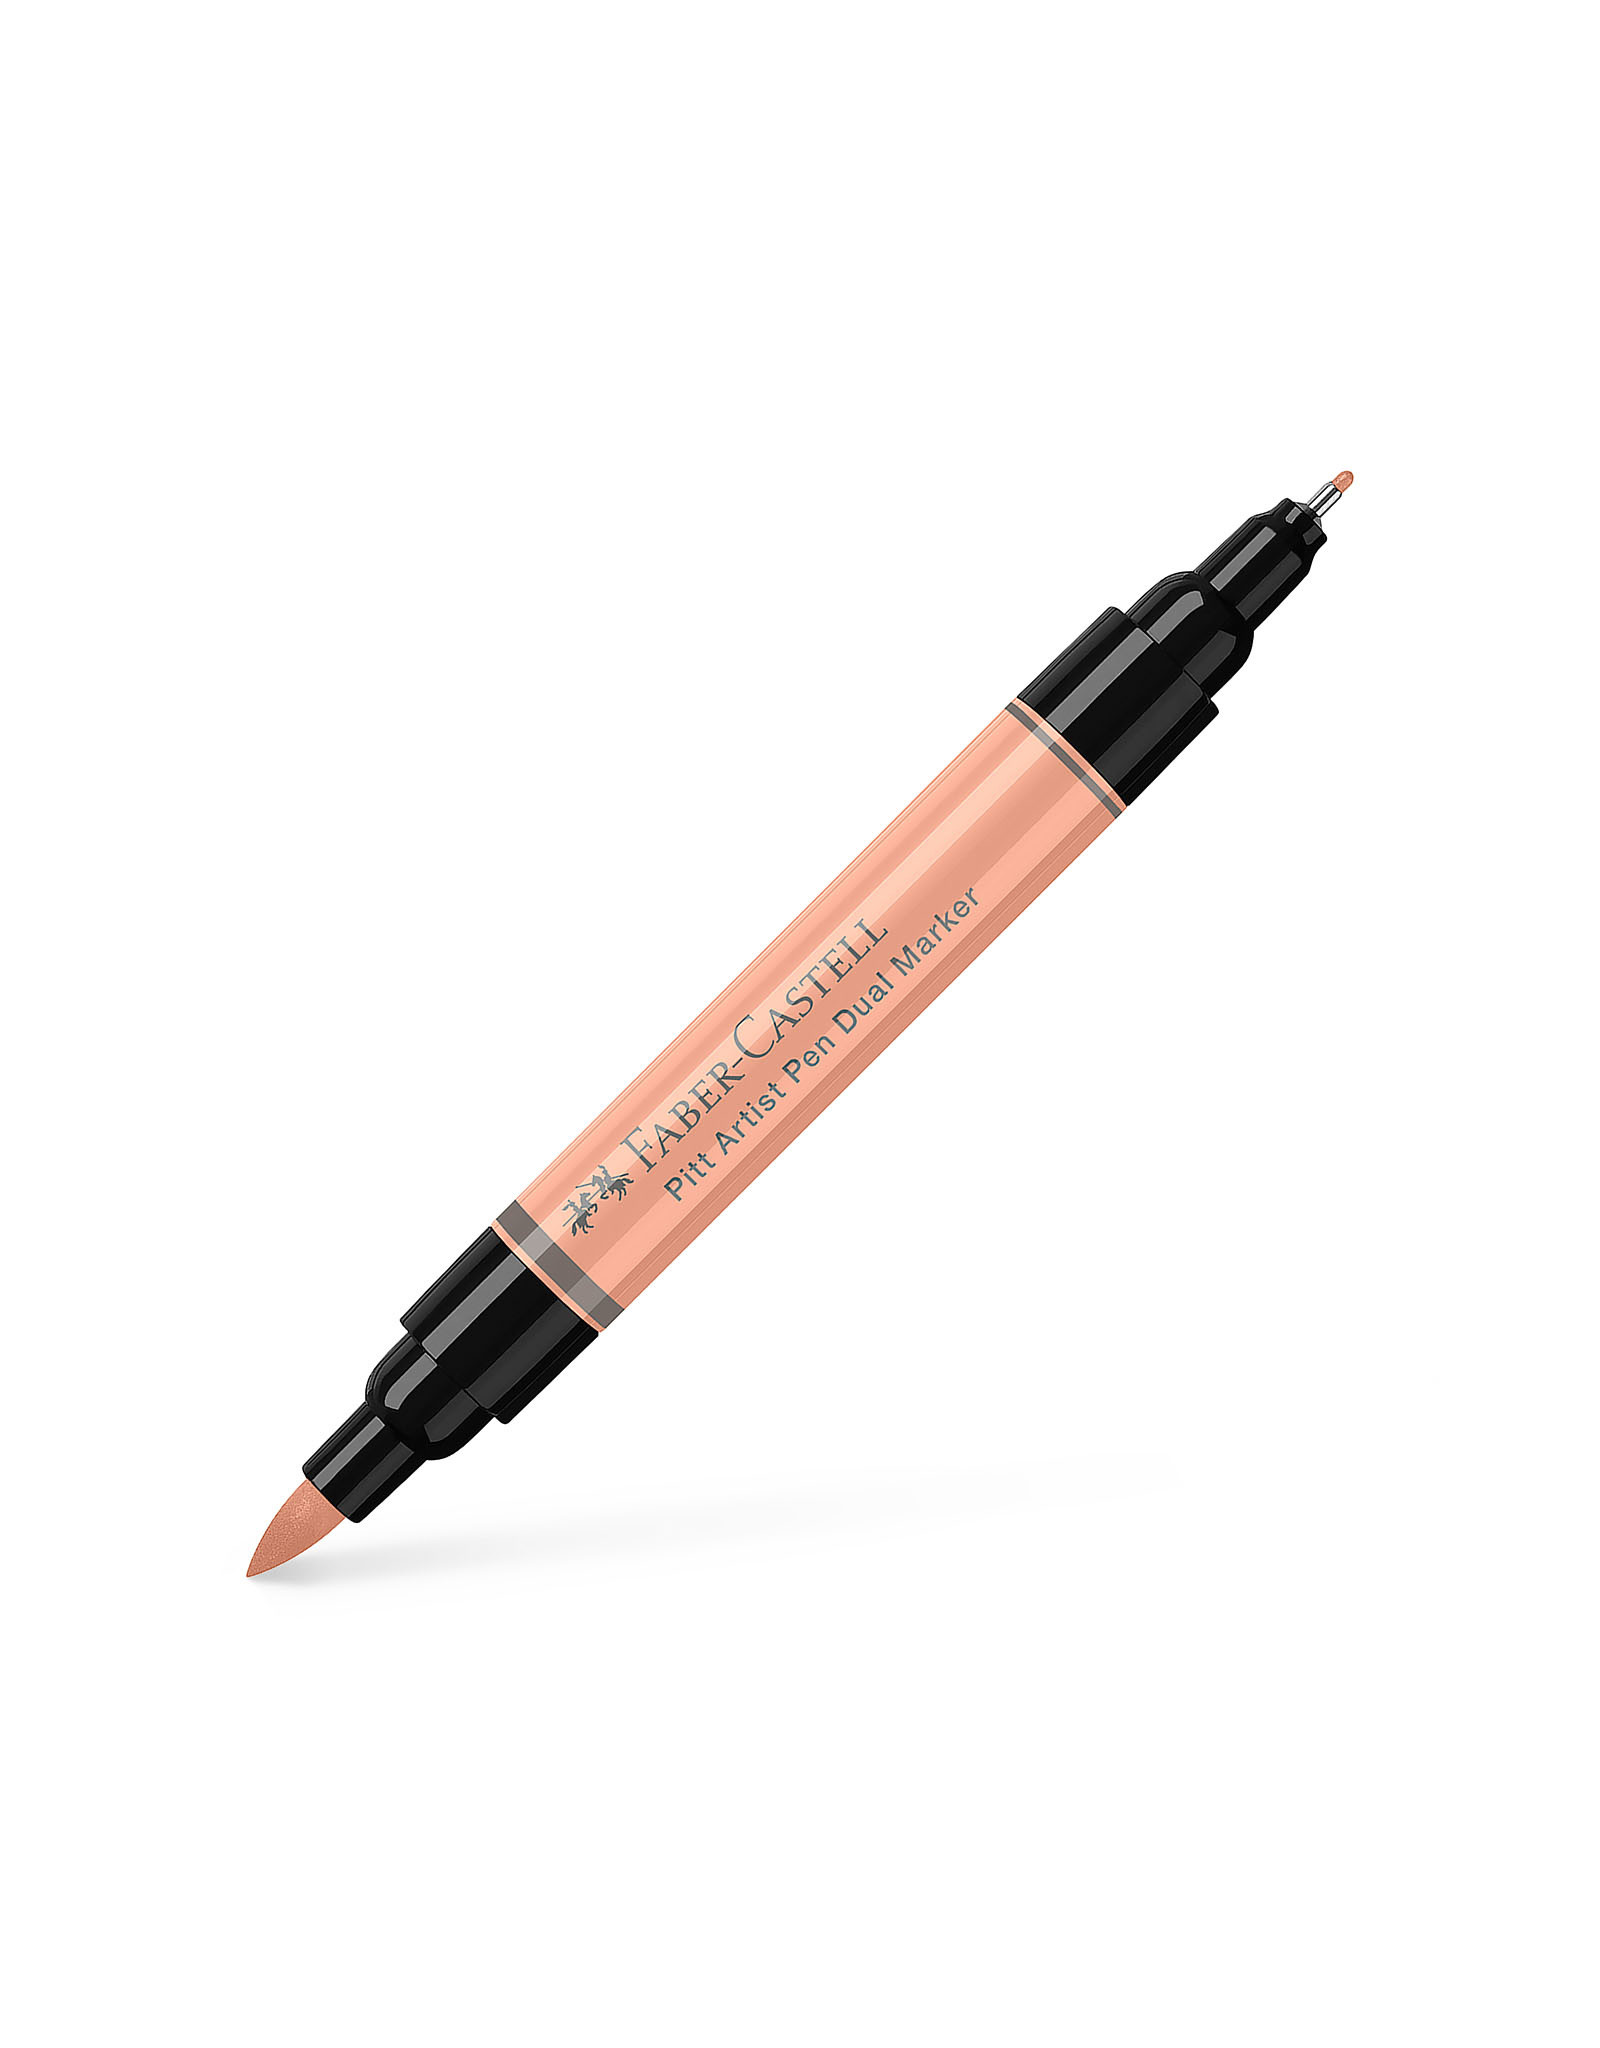 FABER-CASTELL Pitt Artist Pen Dual Tip Marker, Beige Red